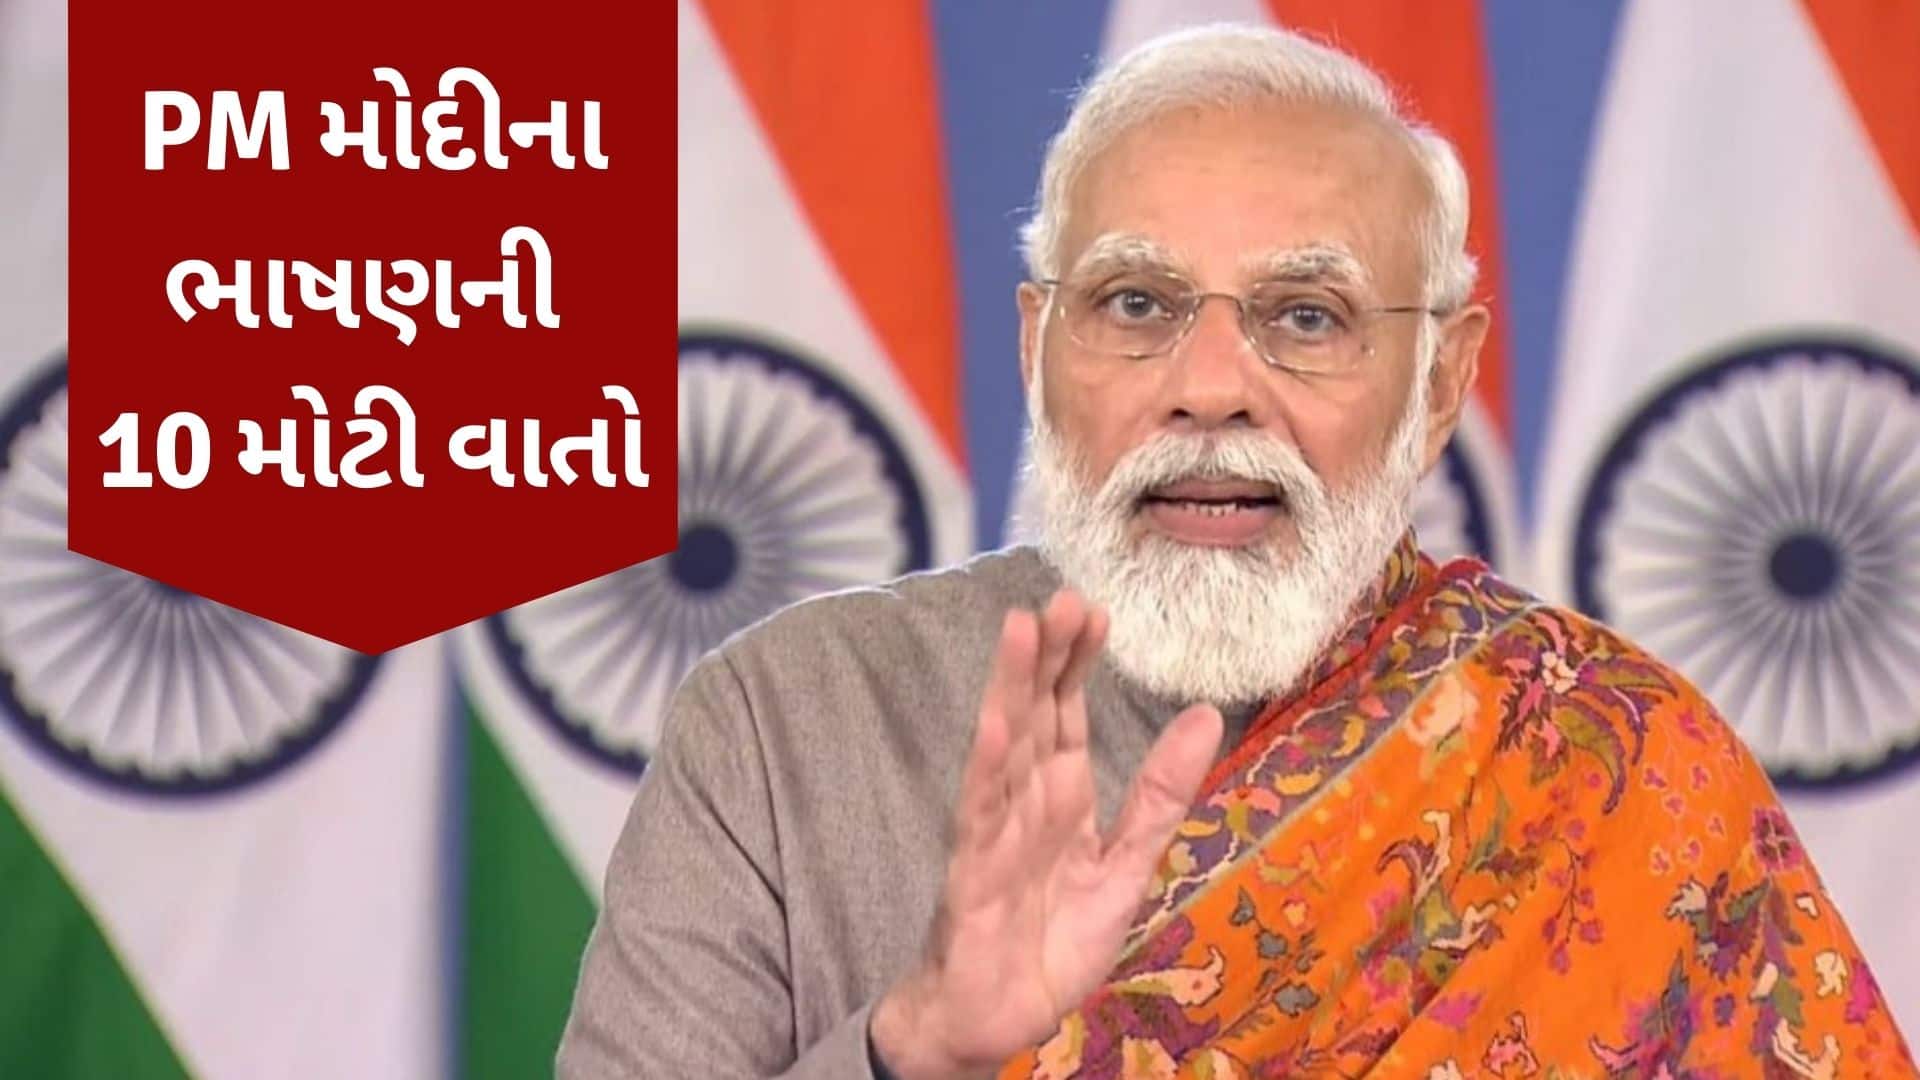 PM મોદીએ કરી 3 કૃષિ કાયદાને રદ કરવાની જાહેરાત, વાંચો તેમના ભાષણની 10 મોટી વાતો